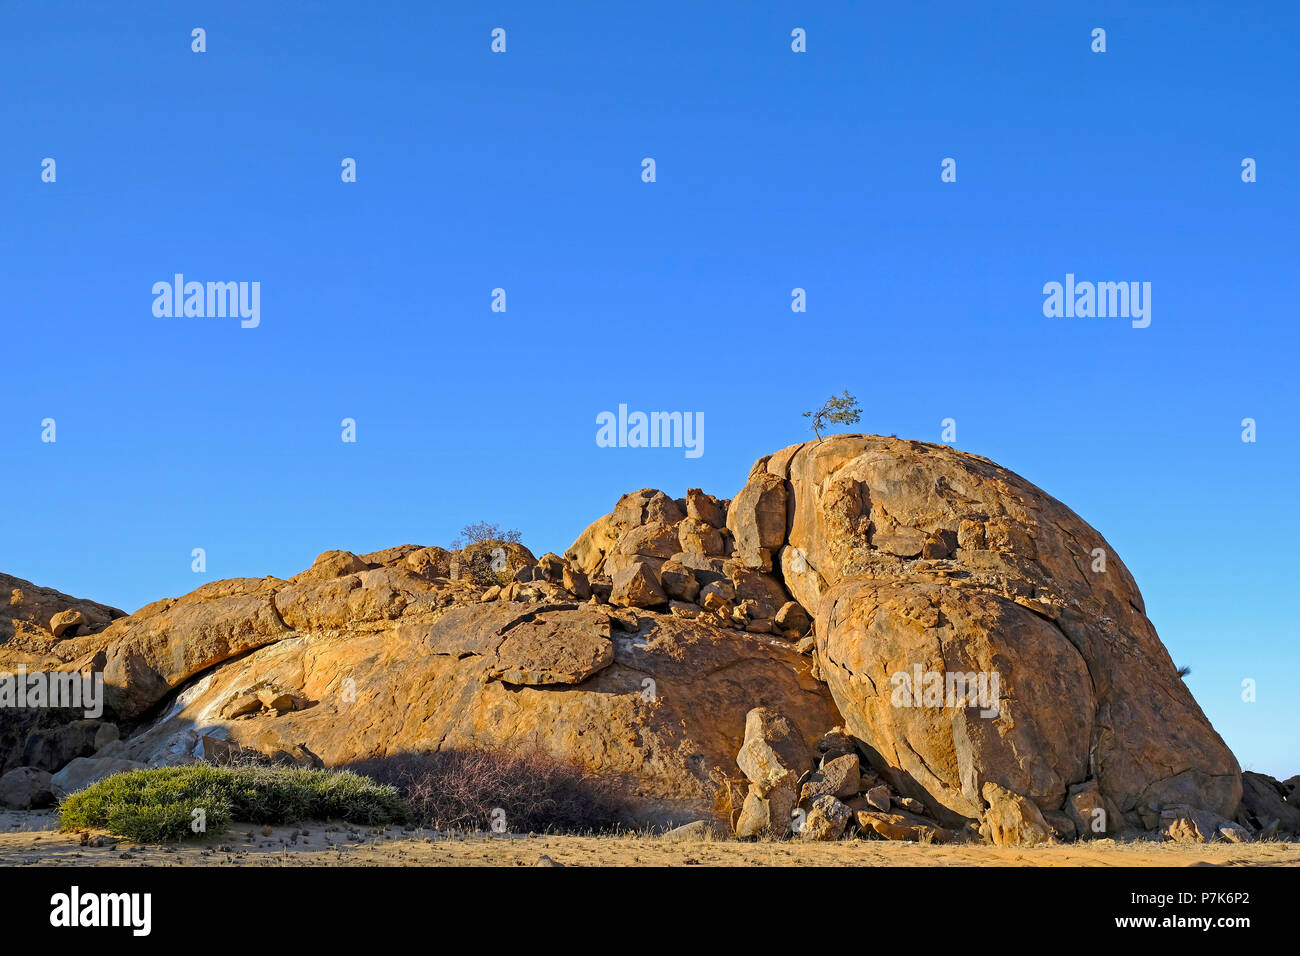 Grandes rocas monolíticas, erosionada con la colina de deslizamiento del rock y el árbol en la parte superior de la zona de Brandberg en Namibia, Damaraland Foto de stock